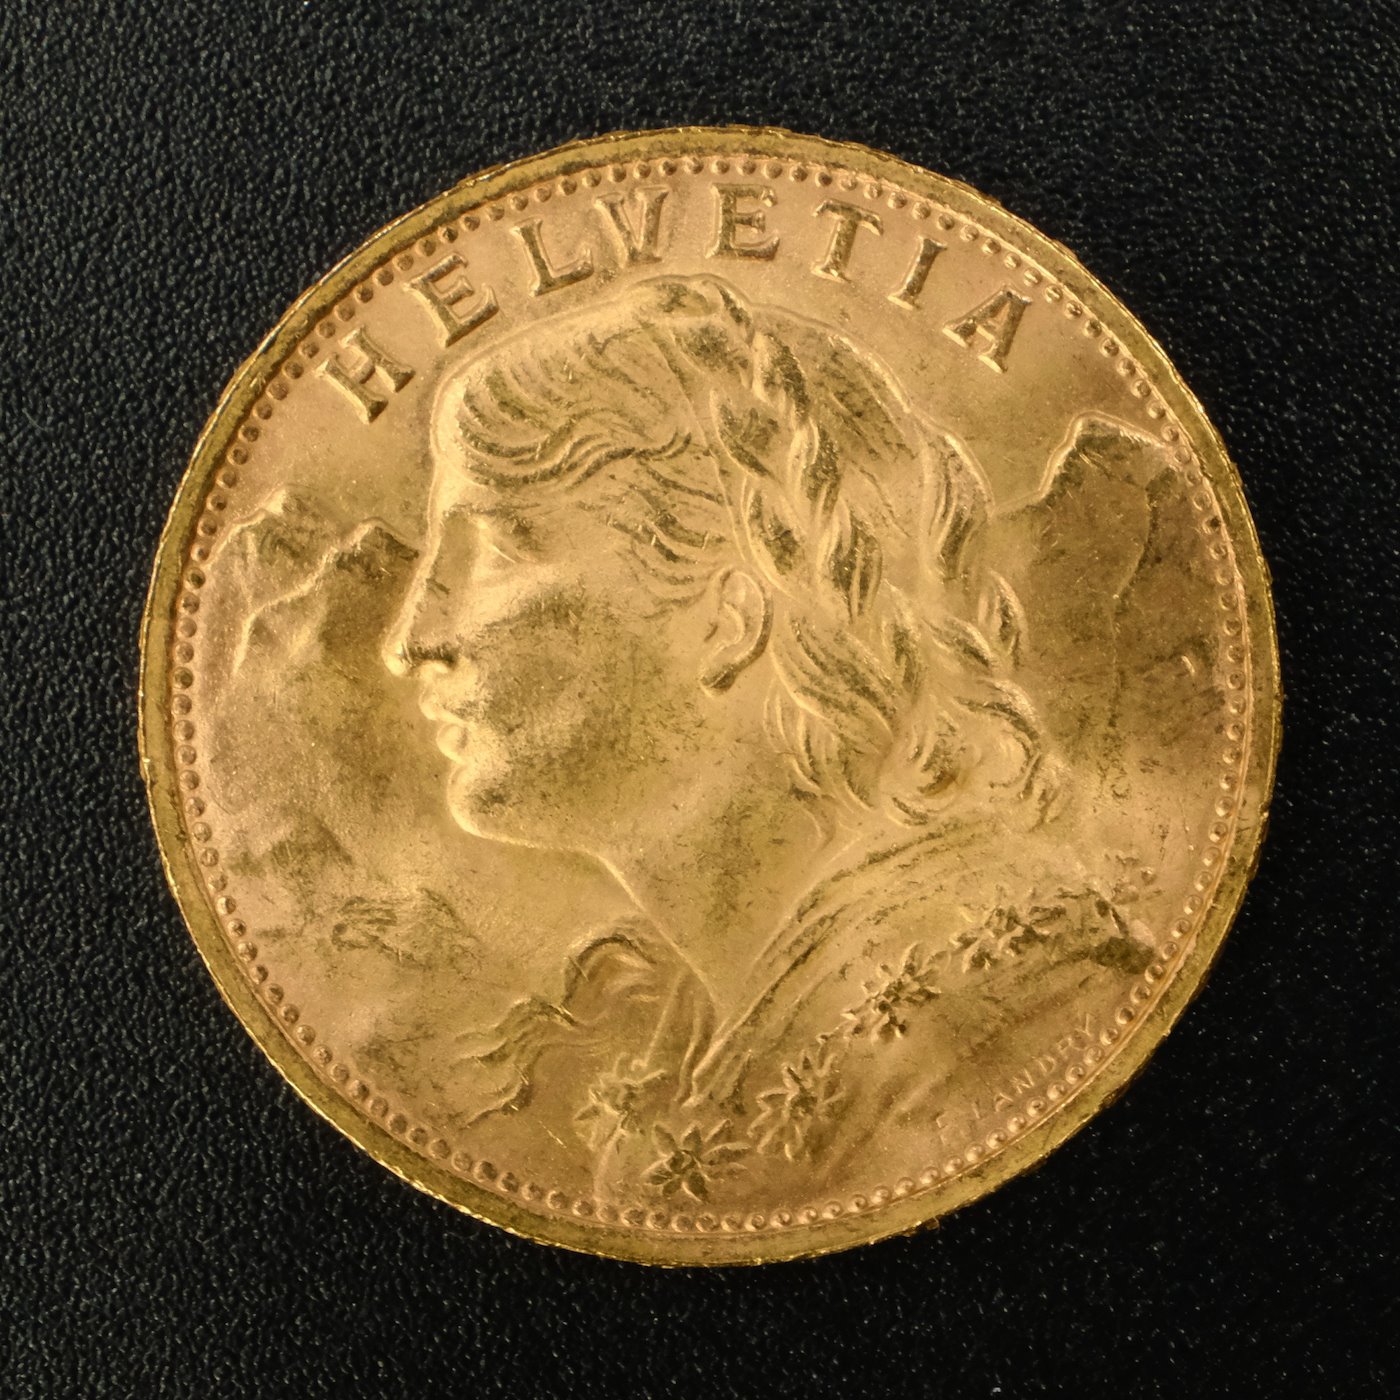 Mince - Švýcarsko zlatý 20 frank VRENELI 1947 B, zlato 900/1000, hrubá hmotnost 6,5g